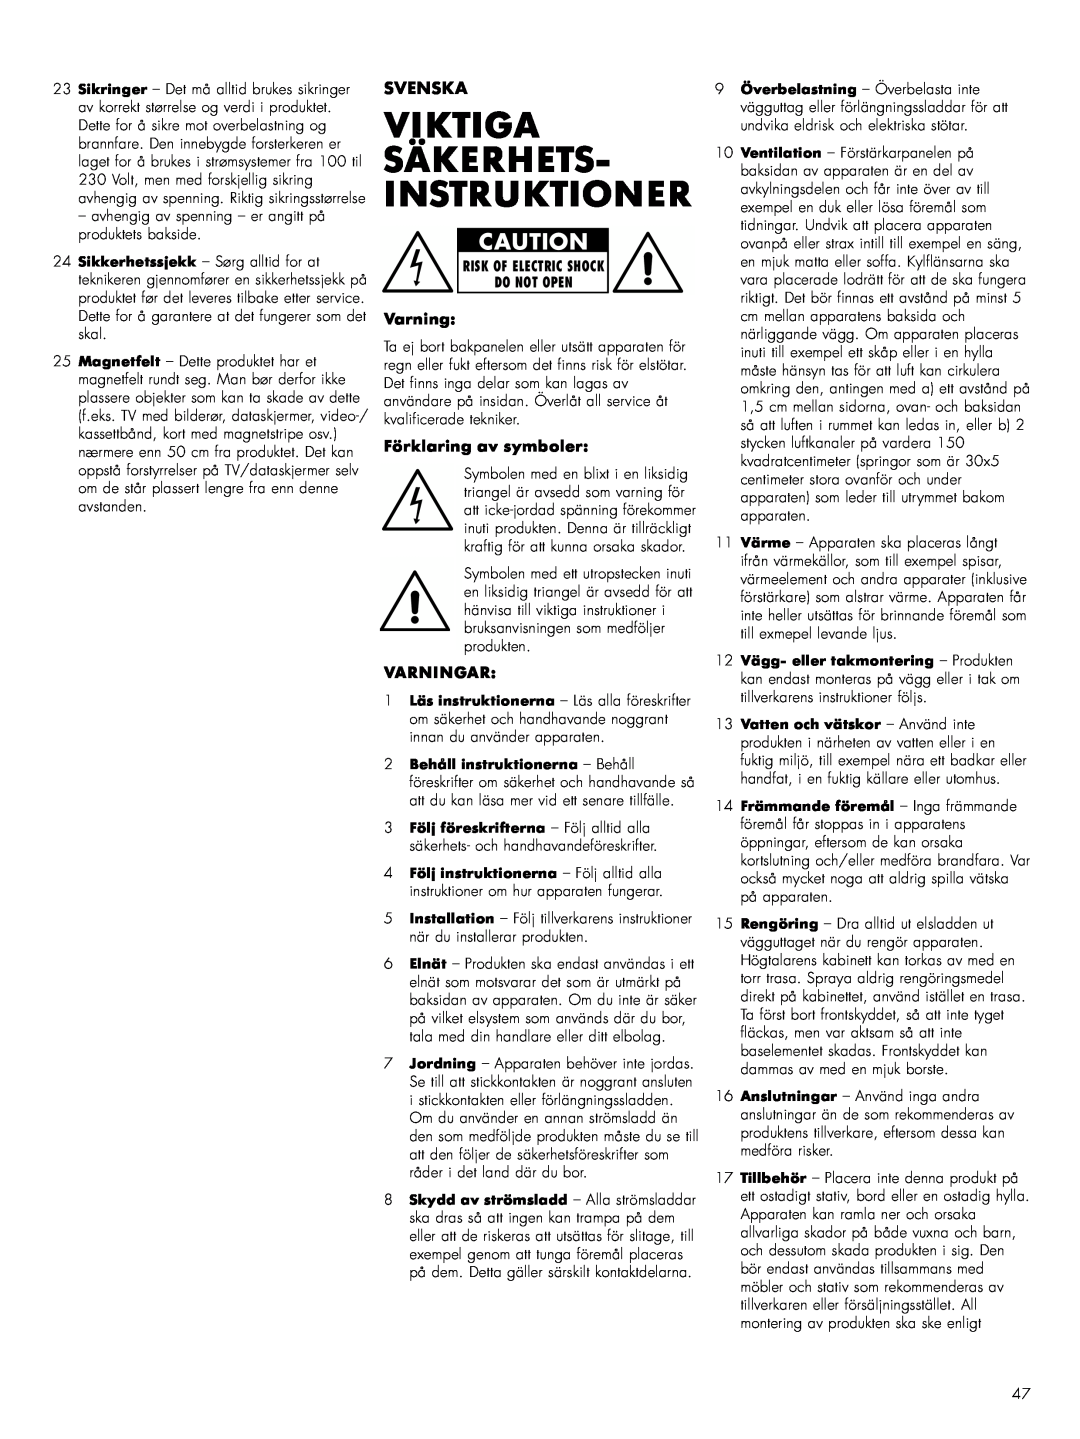 Bowers & Wilkins ASWCM owner manual Viktiga Säkerhets- Instruktioner, Svenska, Förklaring av symboler, Varningar 